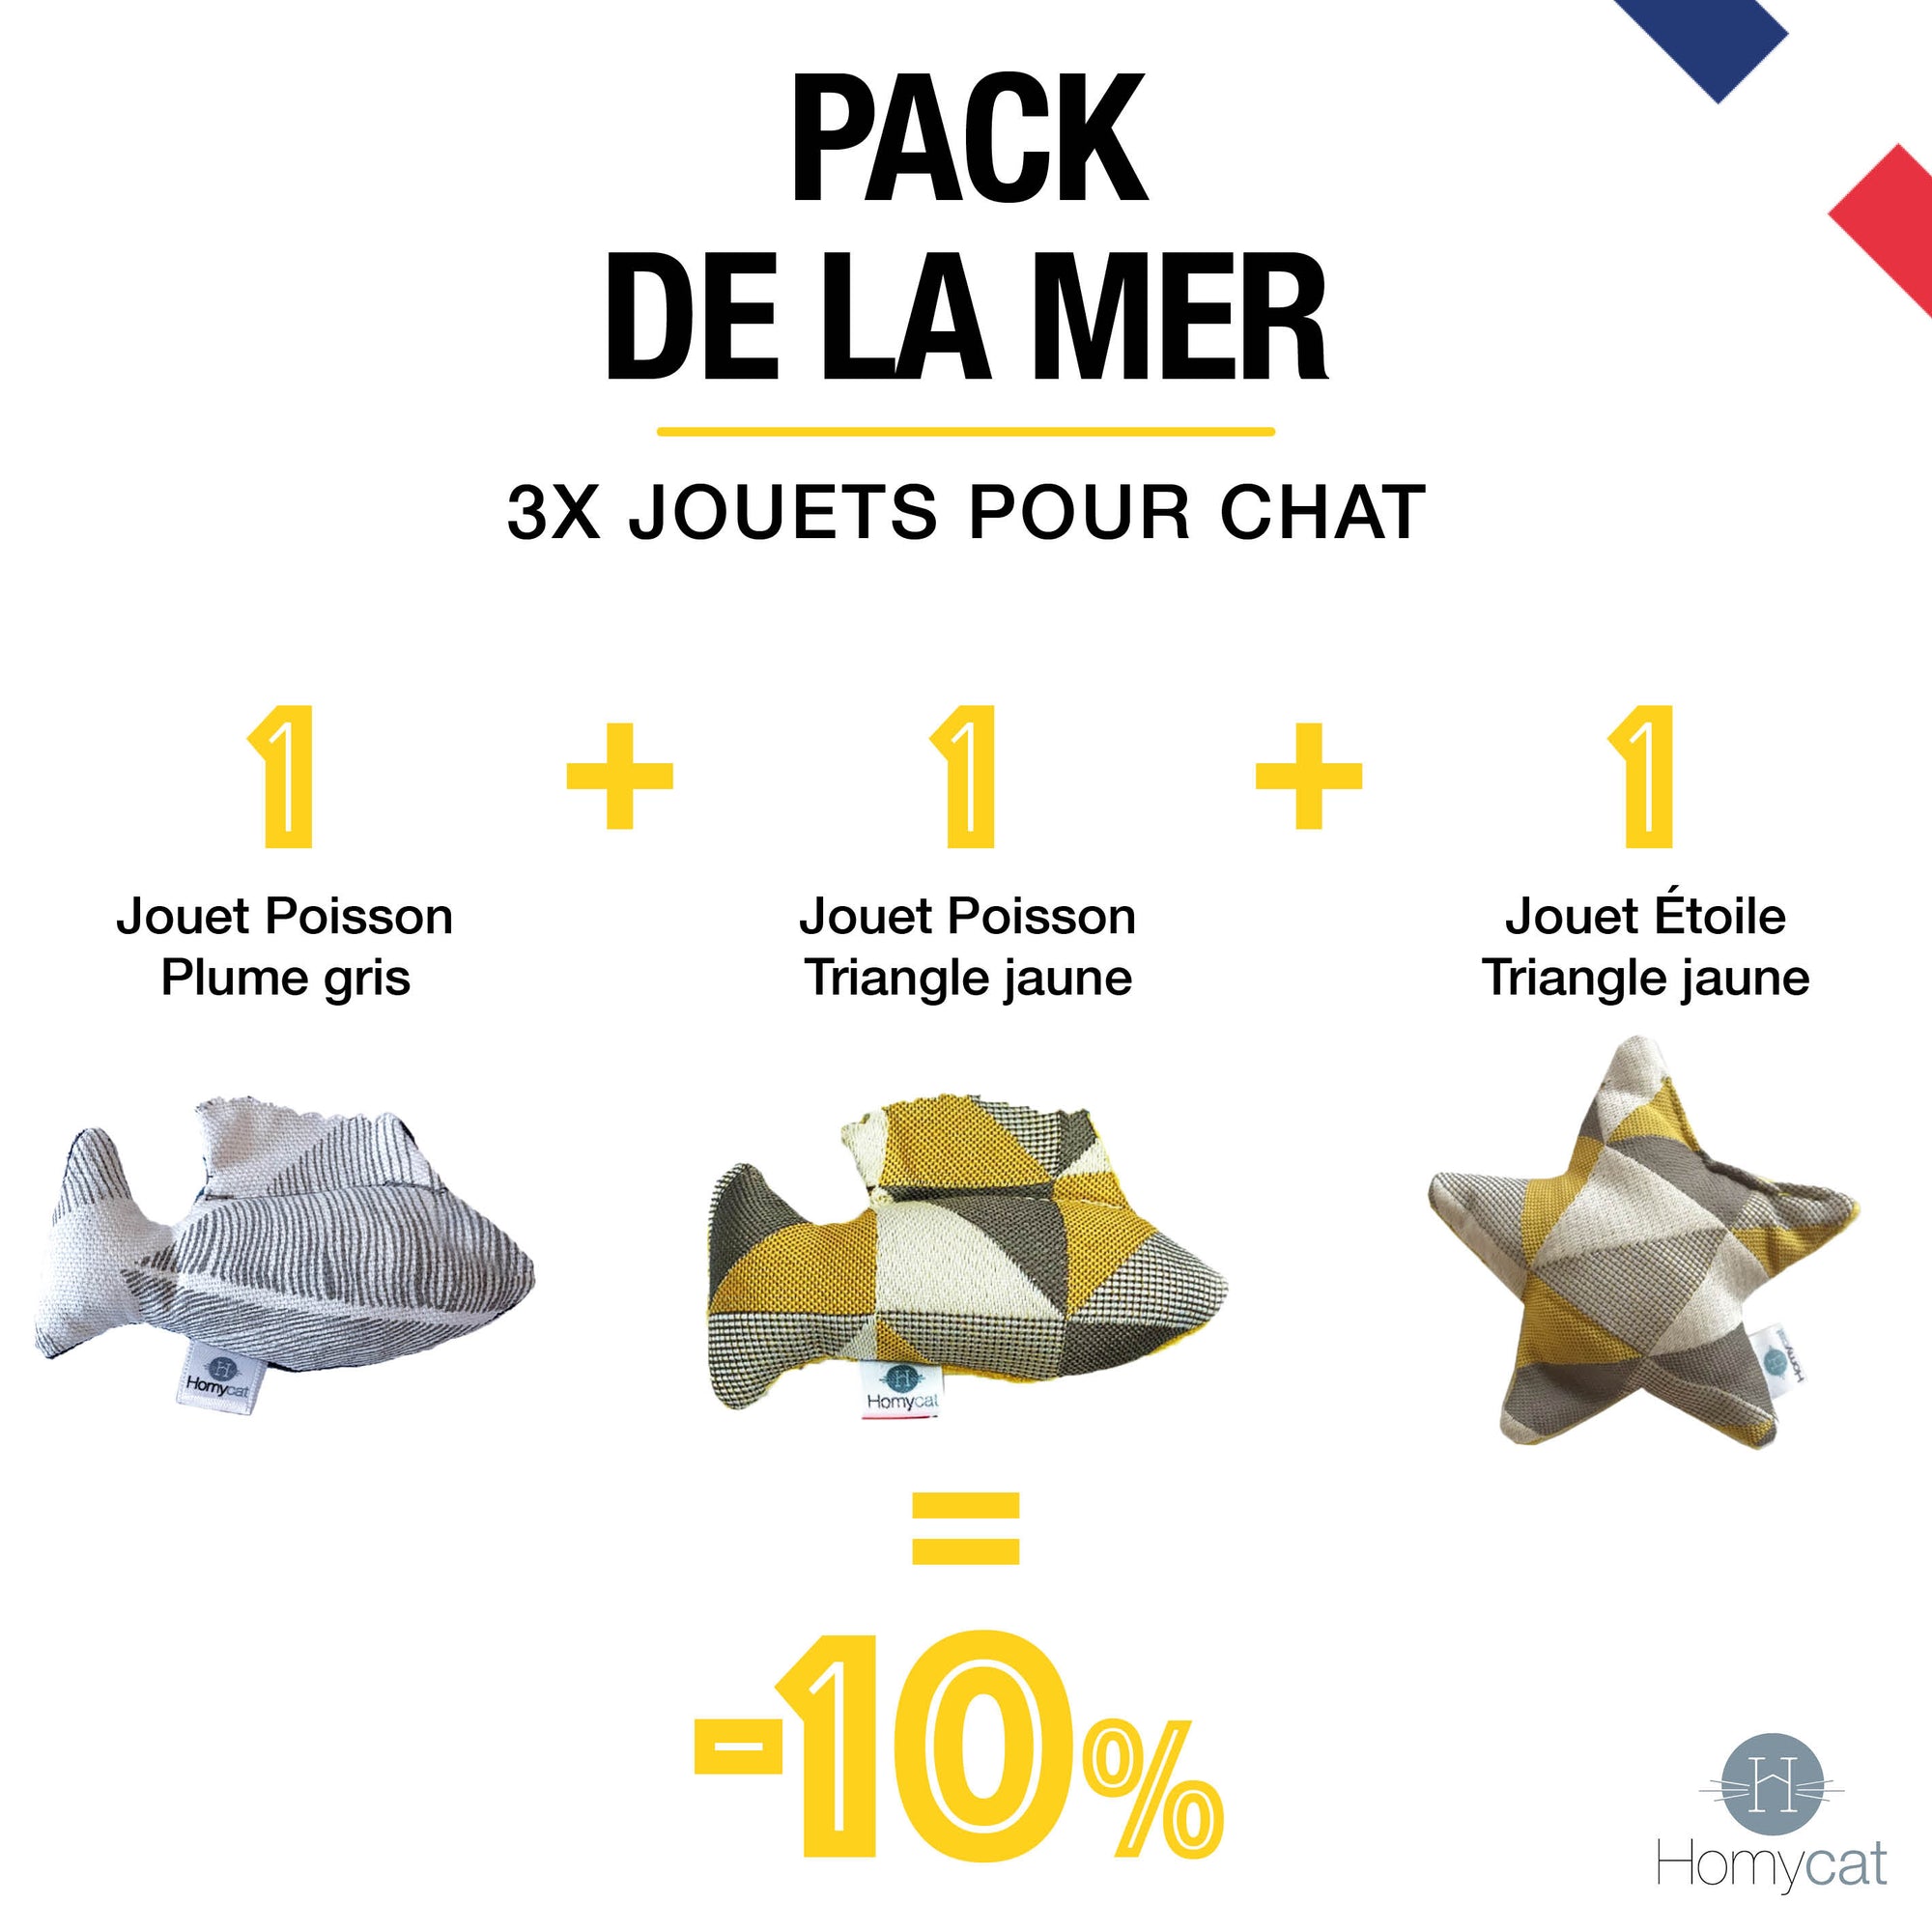 Pack de la mer - 2 x Jouets Poissons pour chats + 1 Jouet Étoile de Mer